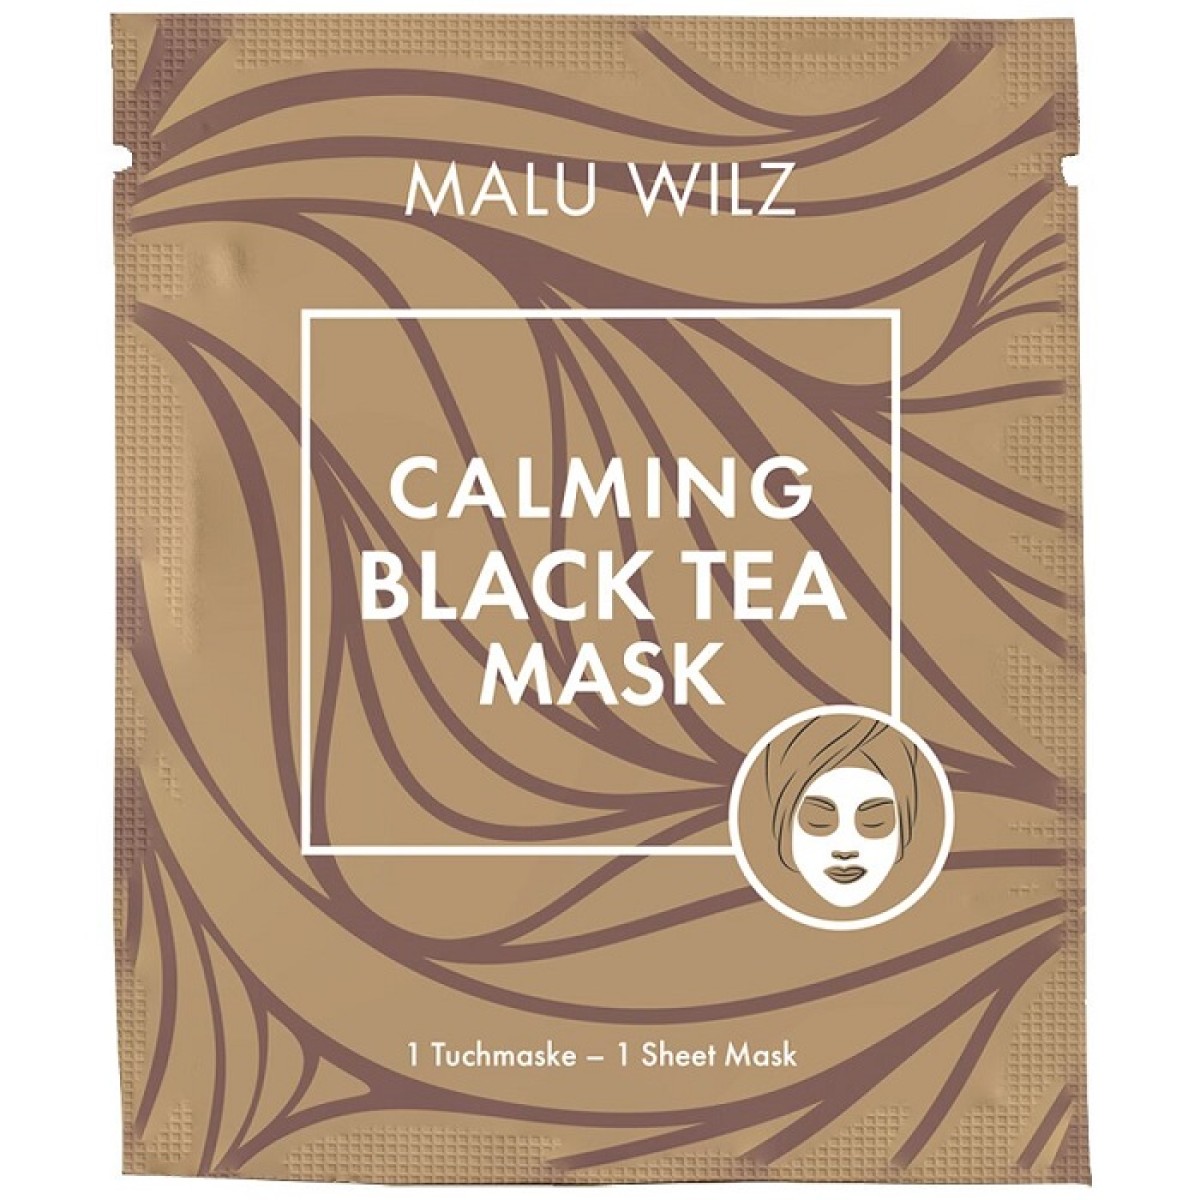 Calming Black Tea Mask - 1 Sachet